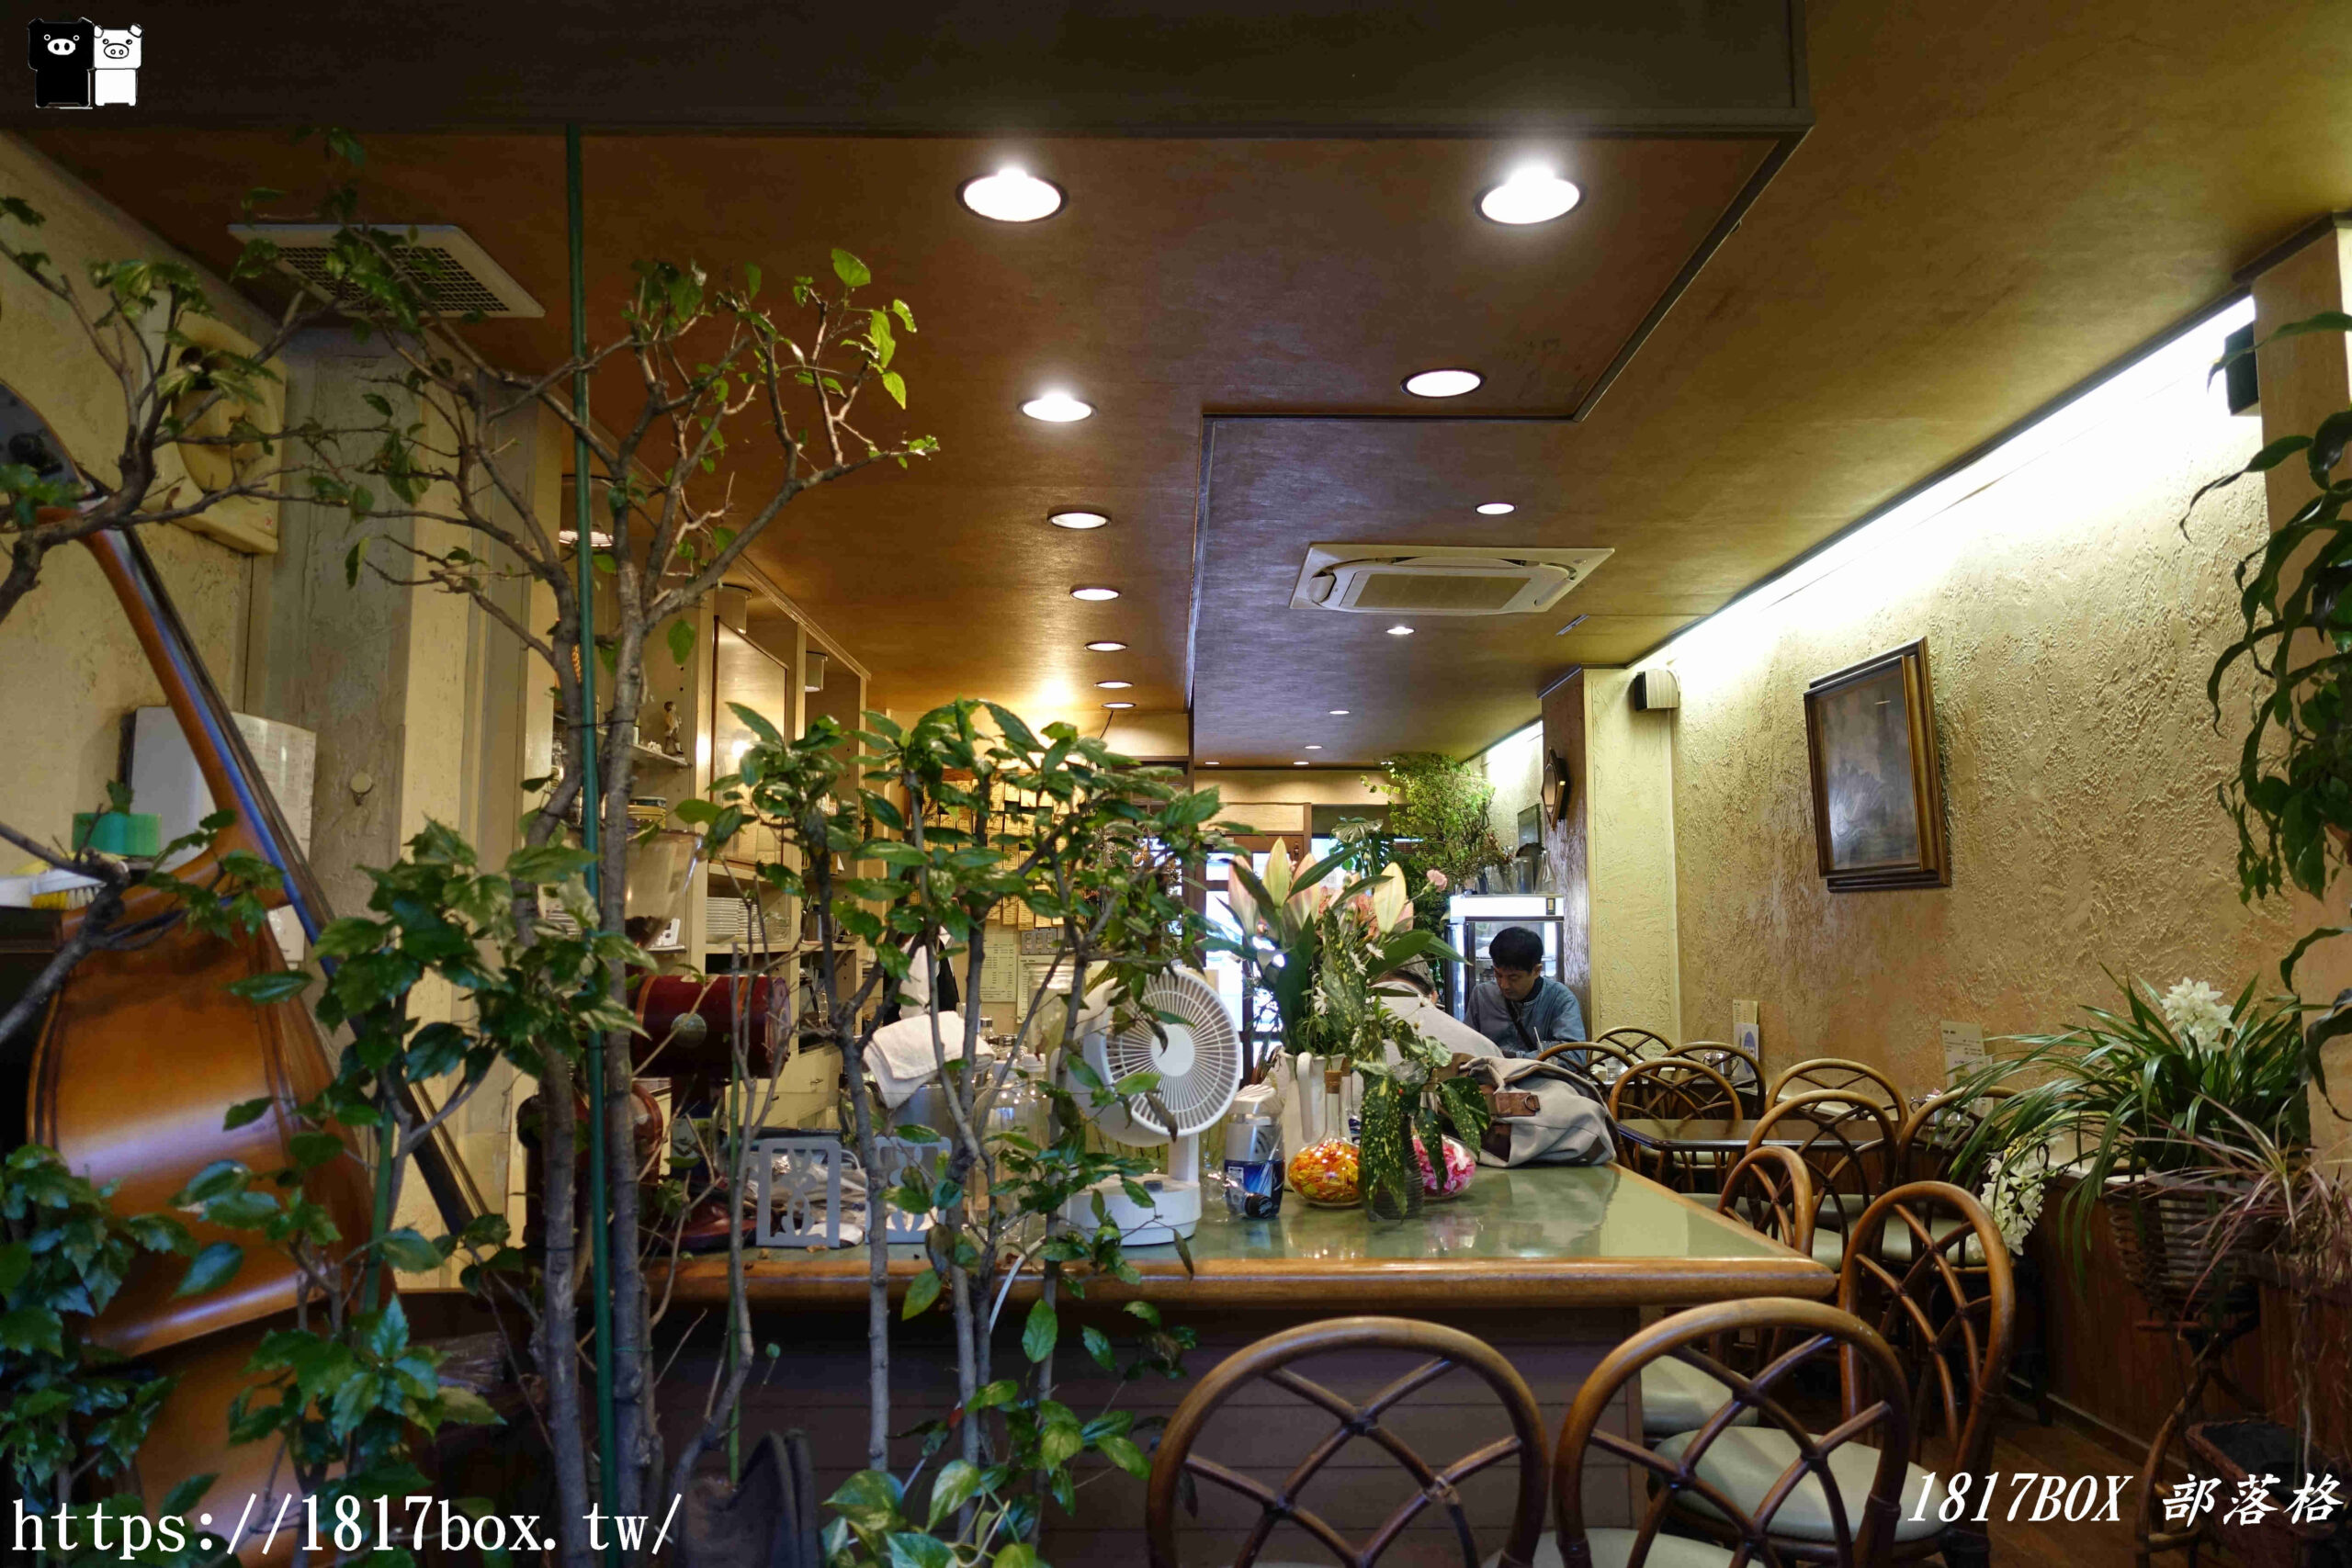 【京都美食】Kiriyama Coffee。きりやまコーヒー。昭和時代氛圍咖啡店